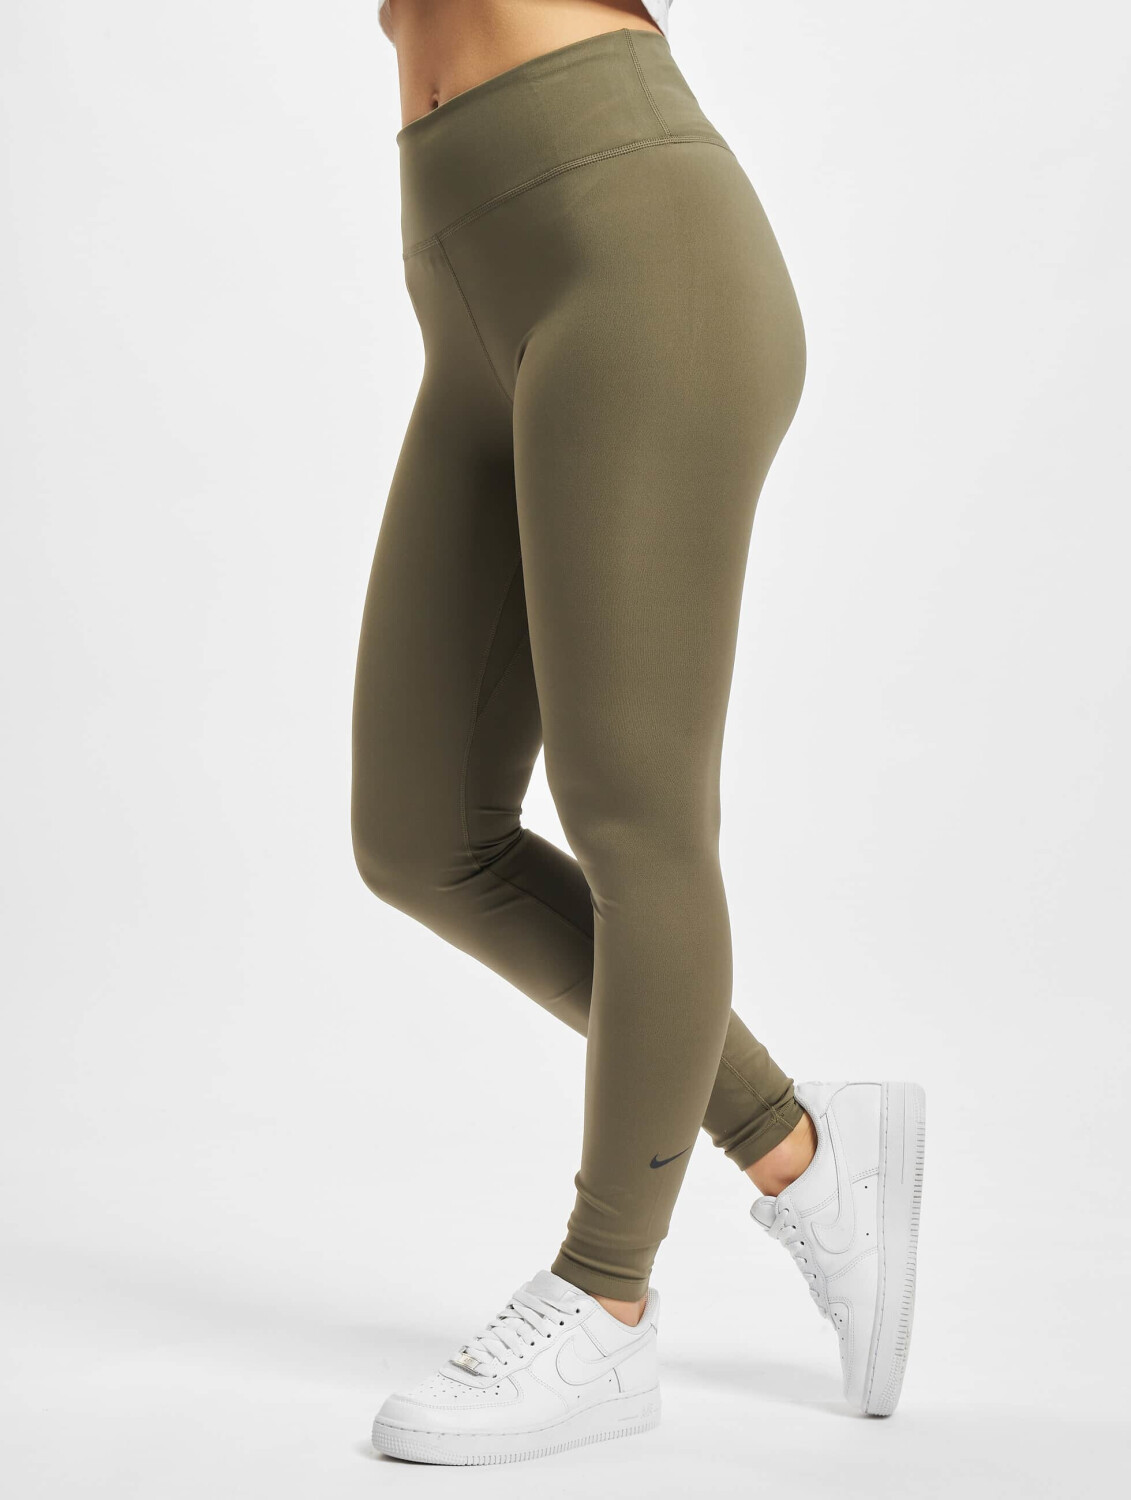 Nike One Tight Women (DD0252) medium olive/black ab 23,99 €